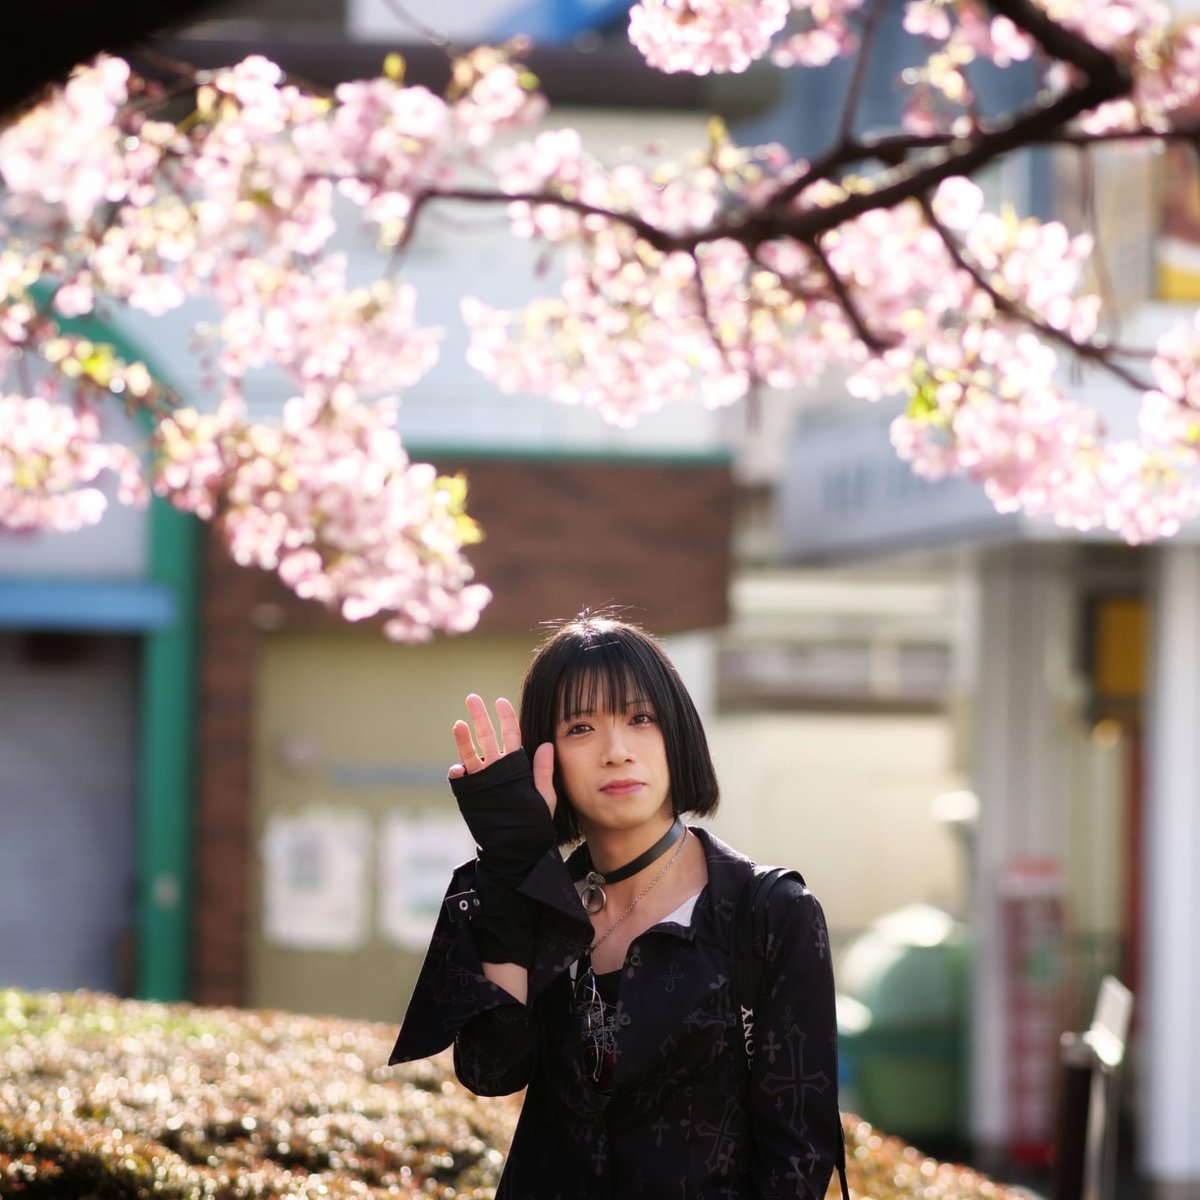 3月前半ですが、桜さんは少々あわてんぼうのようです

#DCG9 #75mmf18 #福生駅

📸@Yuki_A_major